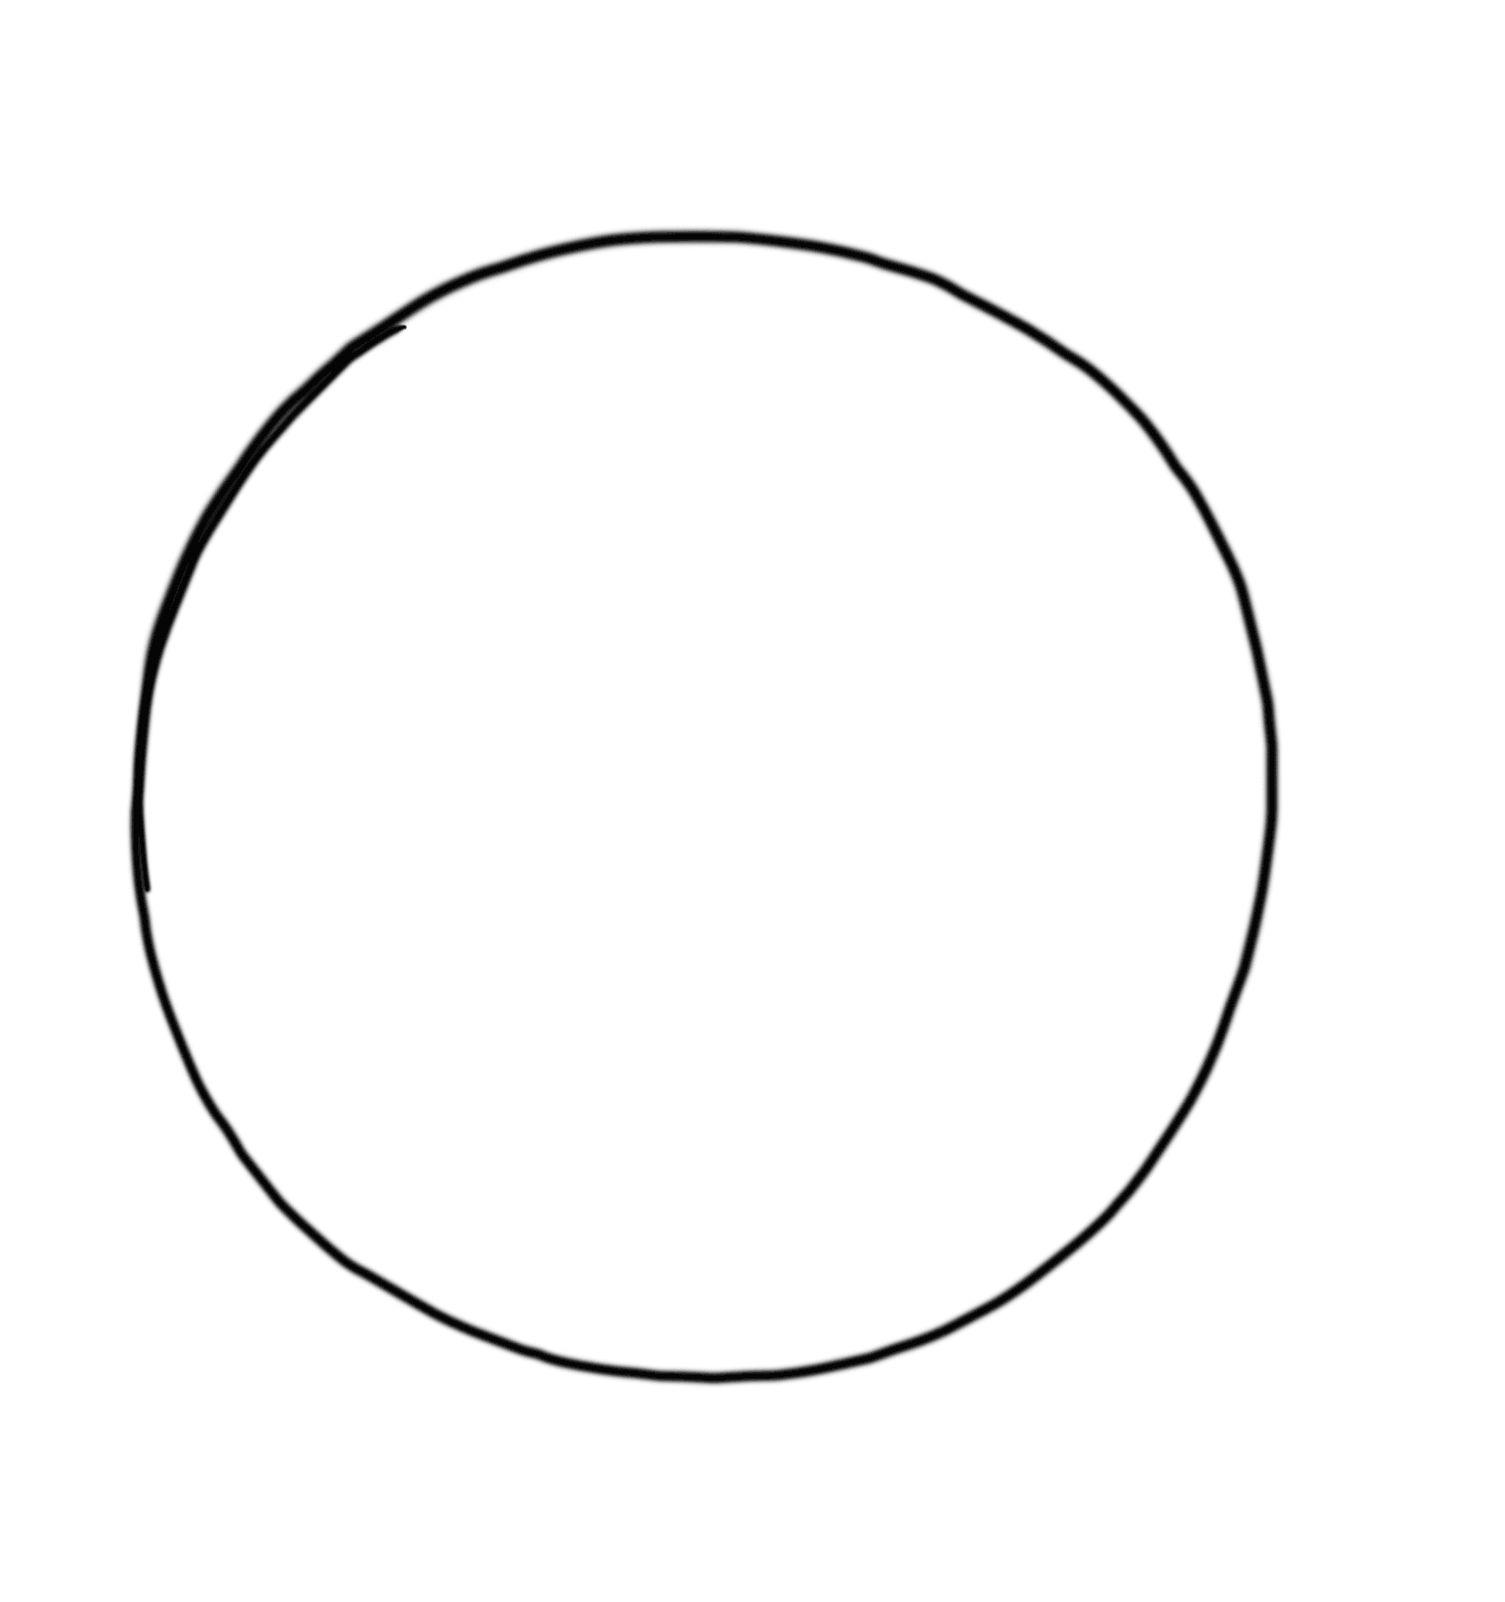 Картинка круга. Шаблон "круги". Круг раскраска для детей. Круг для вырезания. Контур круга для вырезания.